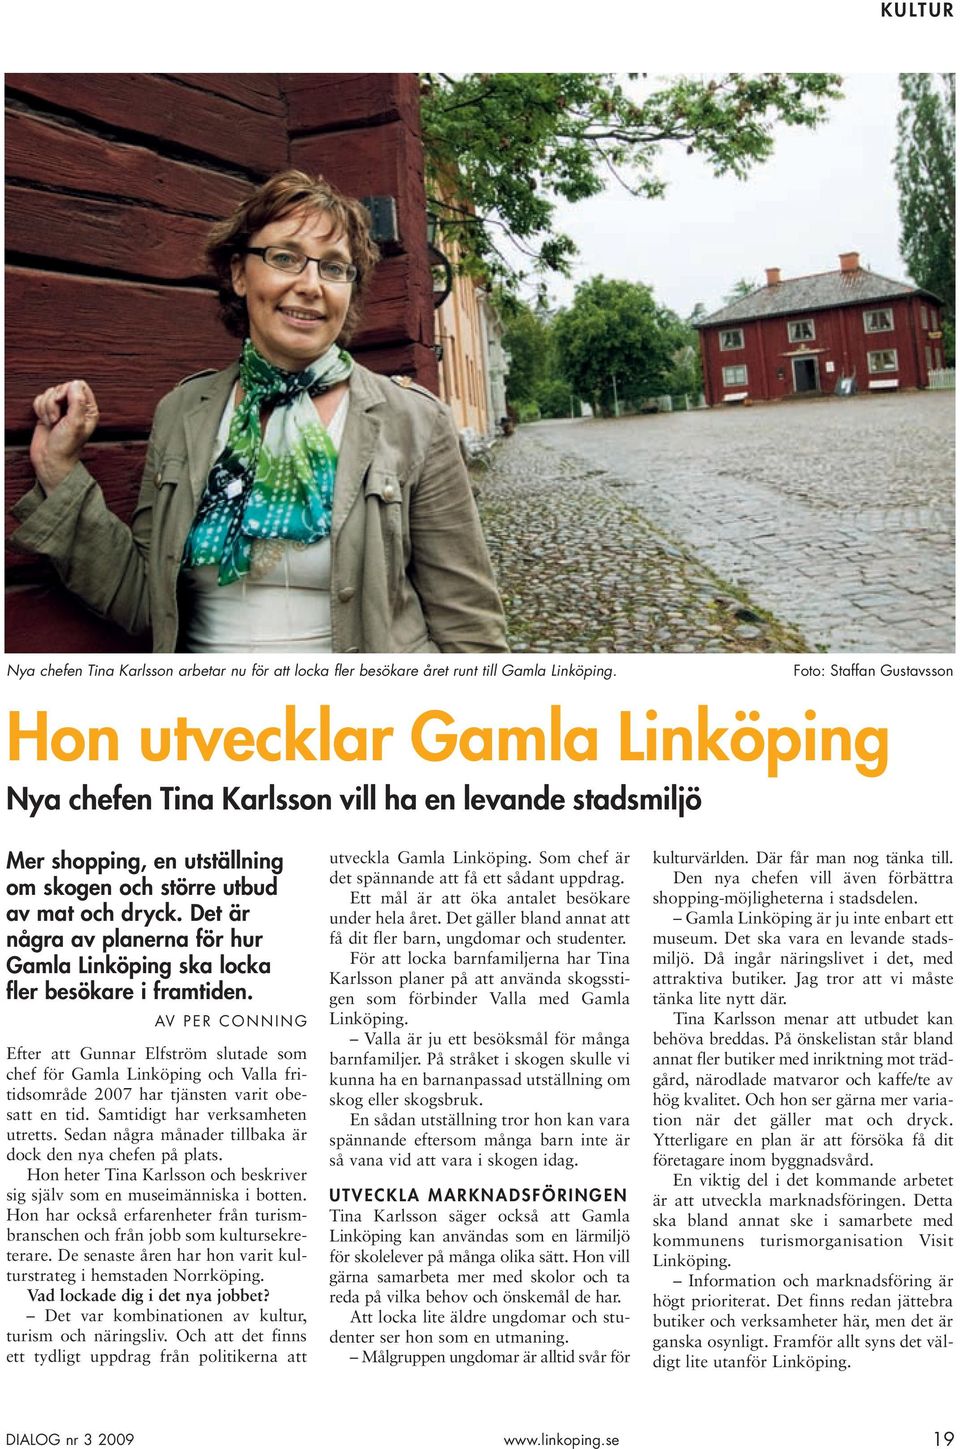 Det är några av planerna för hur Gamla Linköping ska locka fler besökare i framtiden.